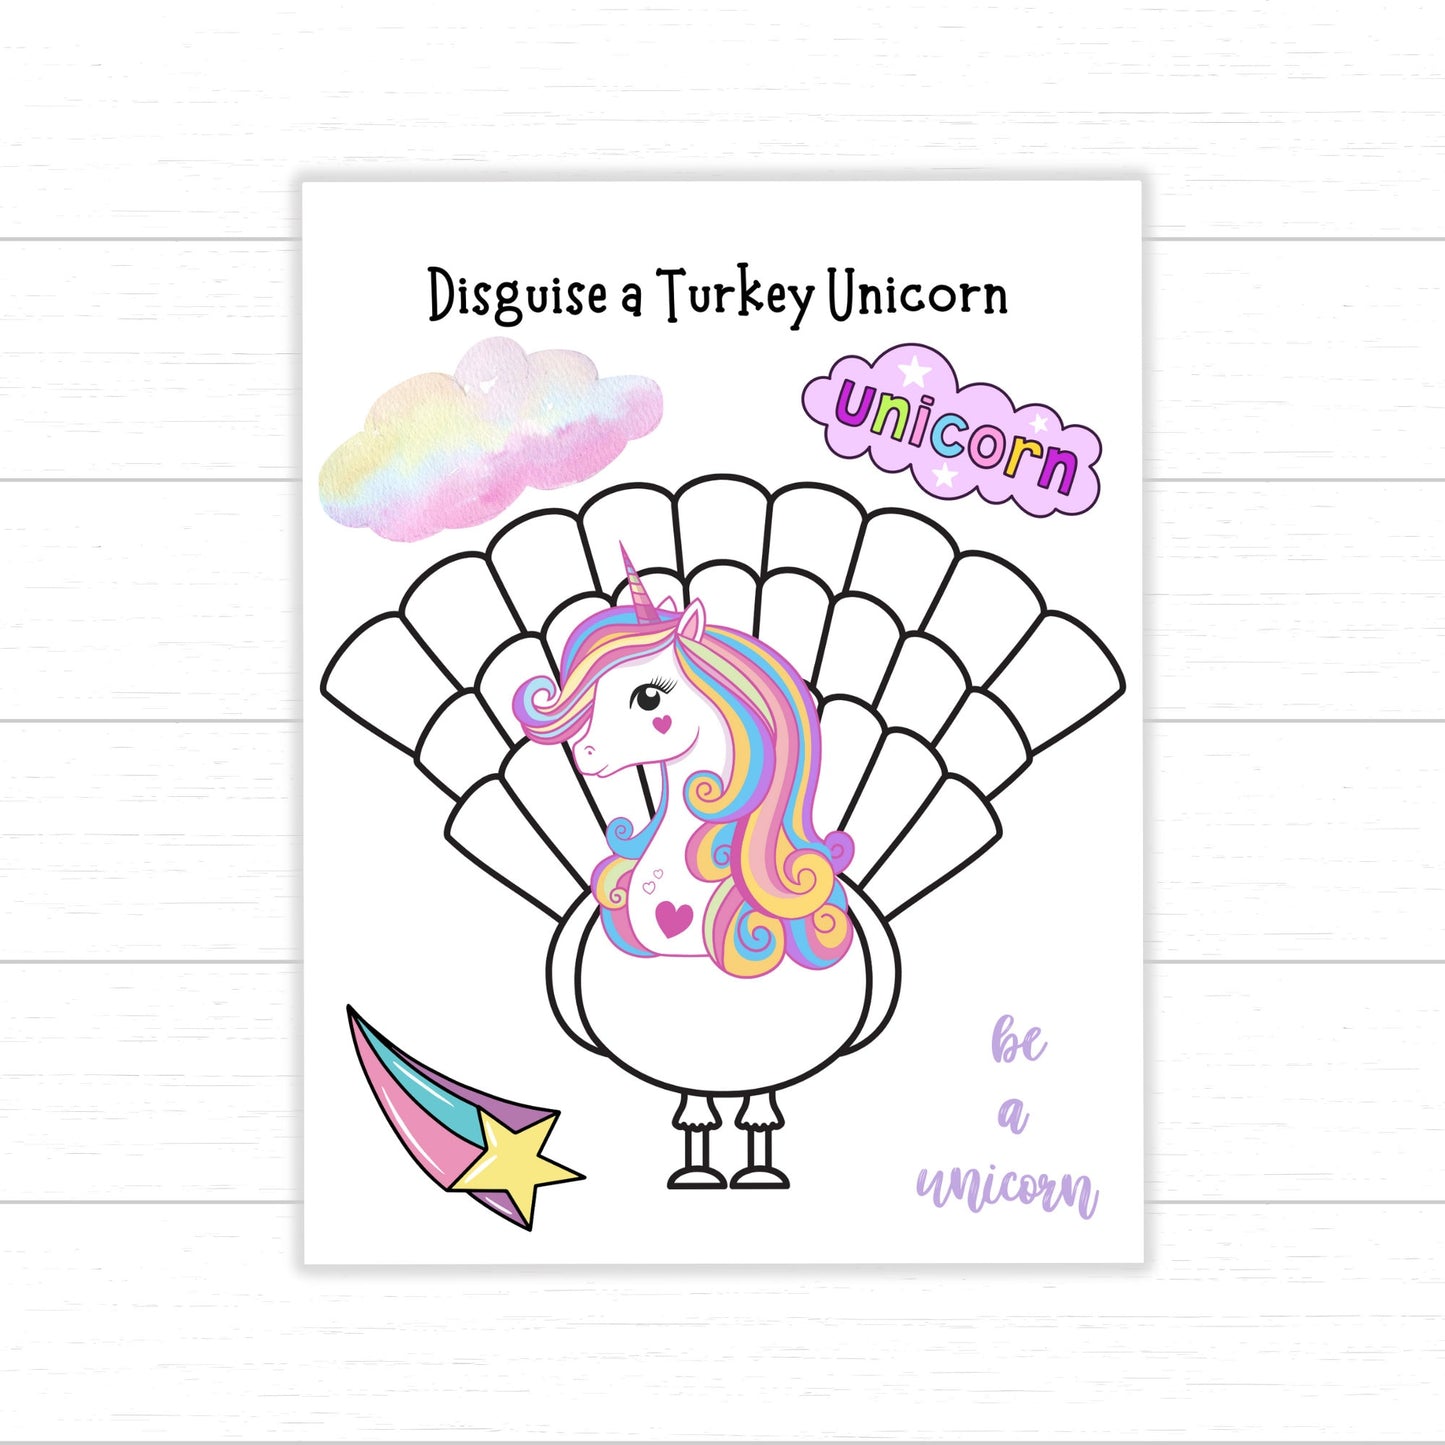 Disguise a Turkey Unicorn, Disguise a Turkey Unicorn, Unicorn Turkey, Disguise a Turkey Project, Turkey Disguise Idea, Unicorn Disguise Idea